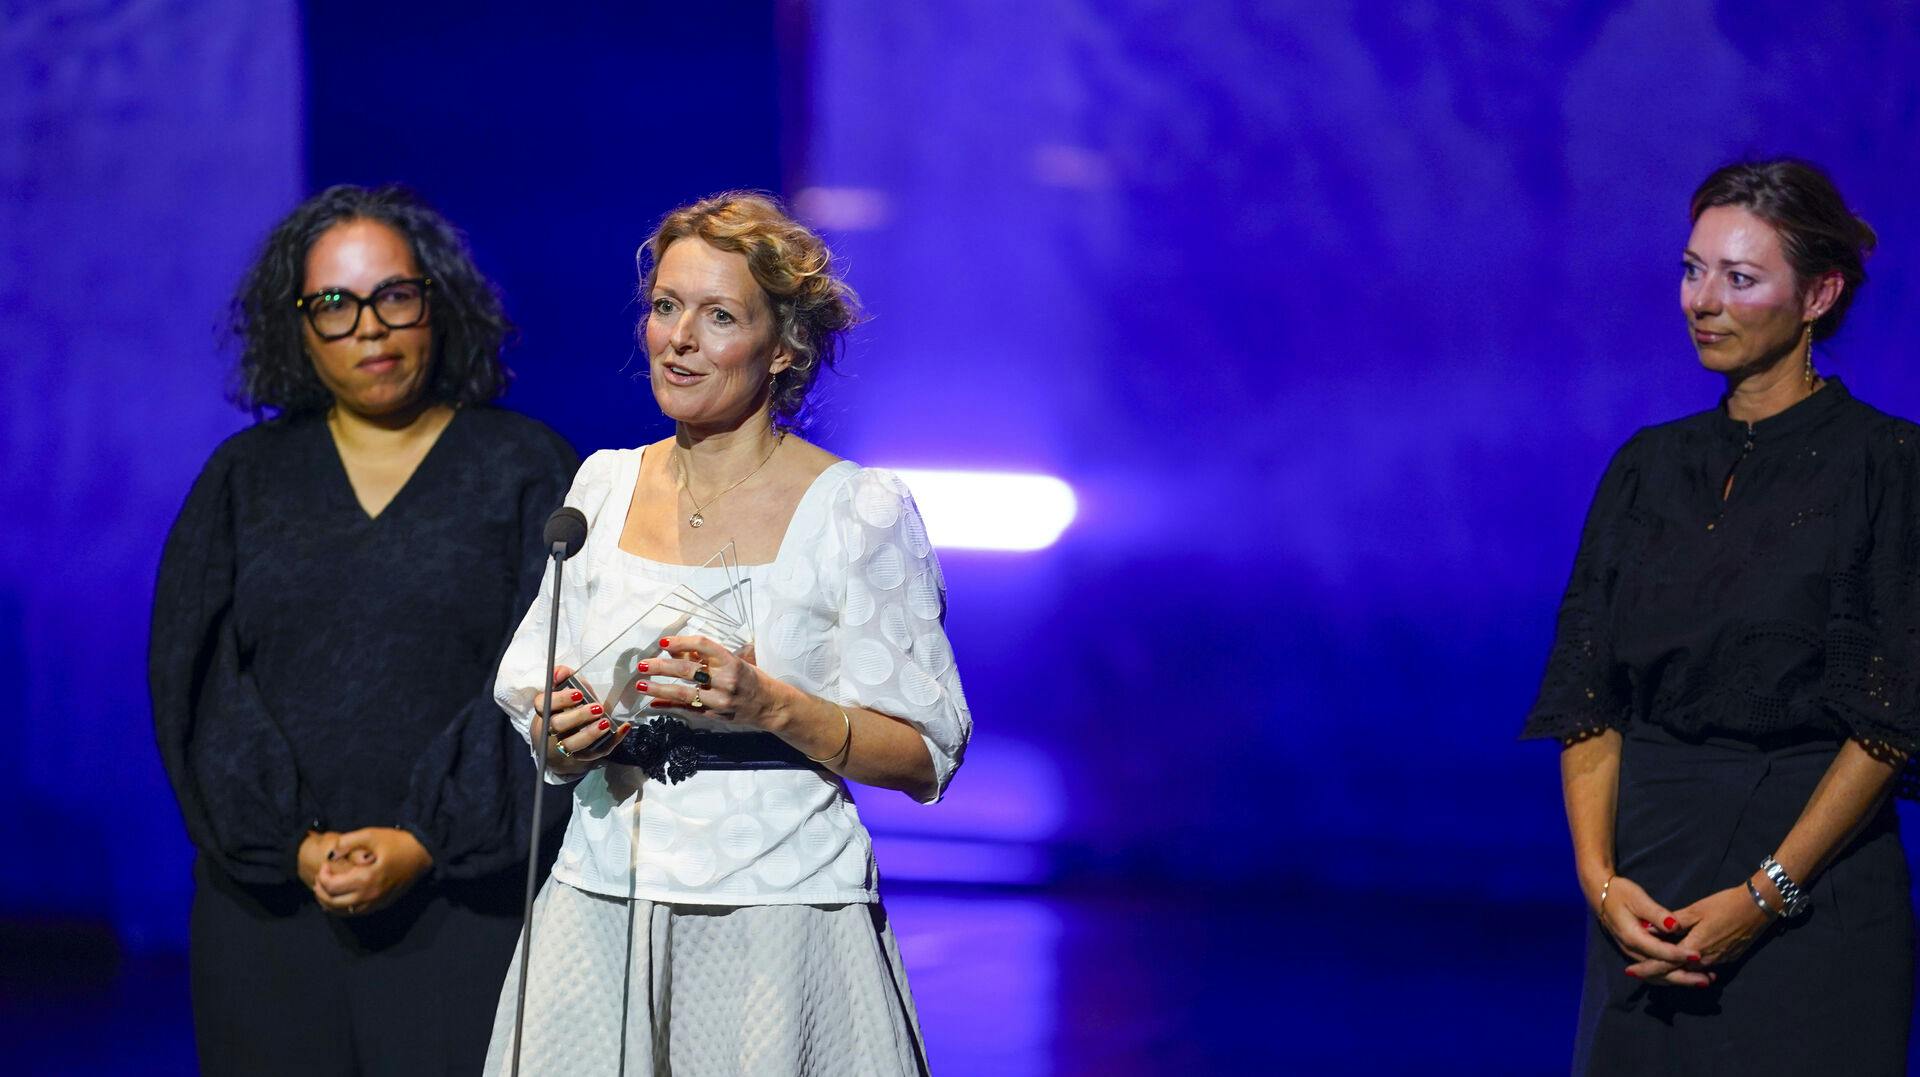 Den danske film "Viften" har tirsdag aften vundet Nordisk Råds Filmpris.